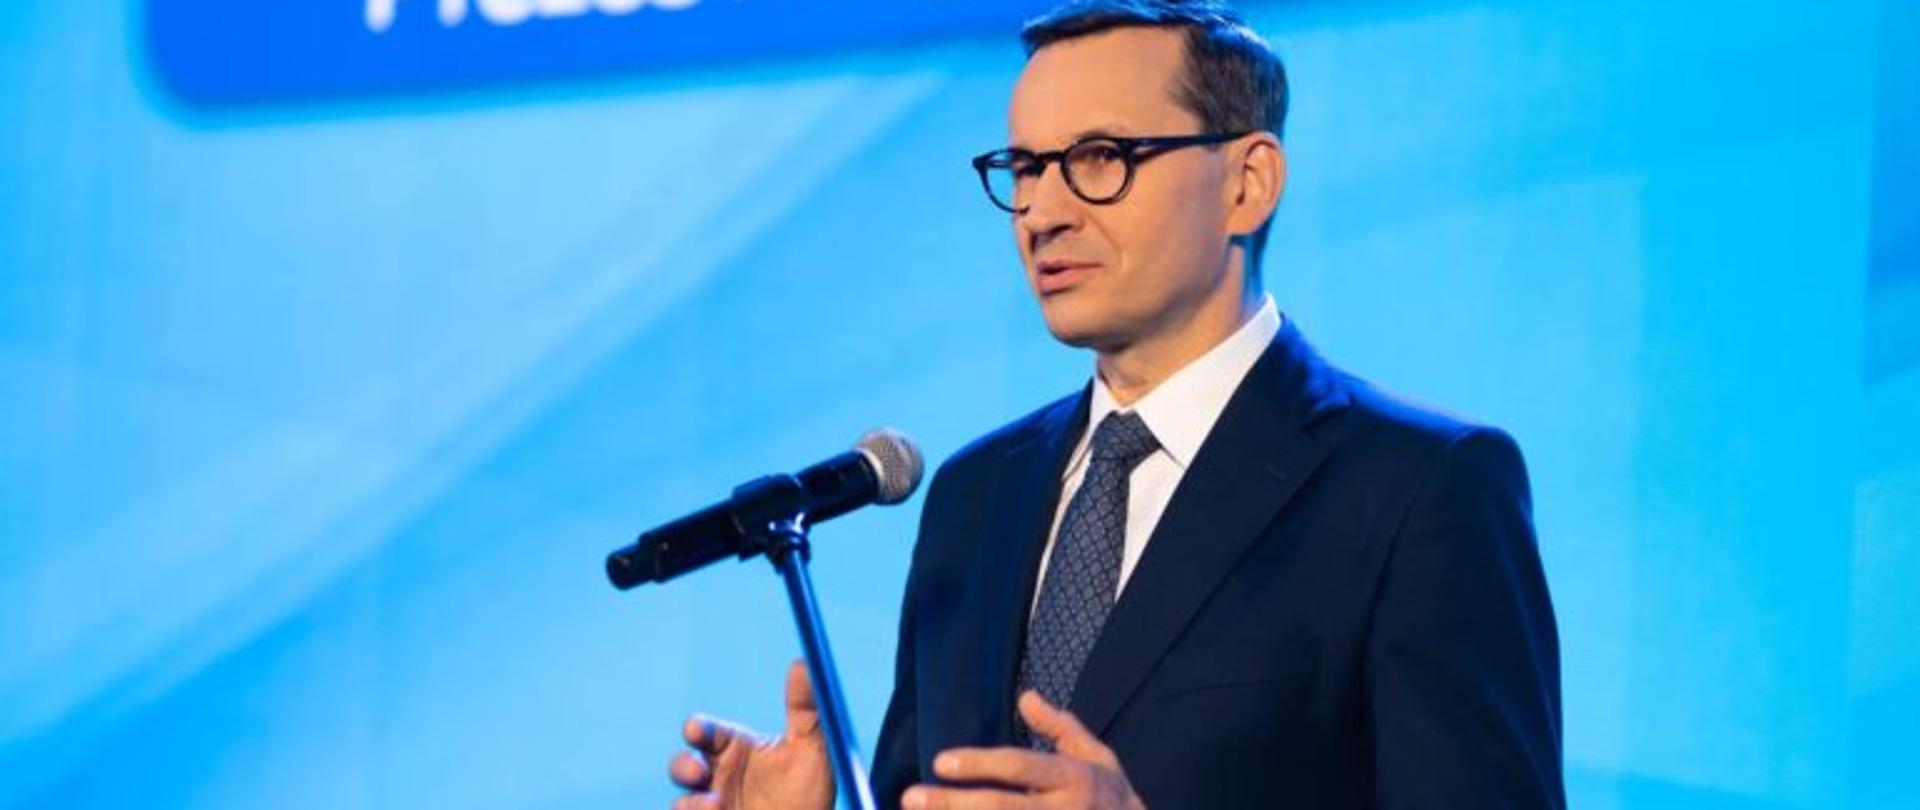 Premier Mateusz Morawiecki przemawia podczas Samorządowego Kongresu Trójmorza w Lublinie.